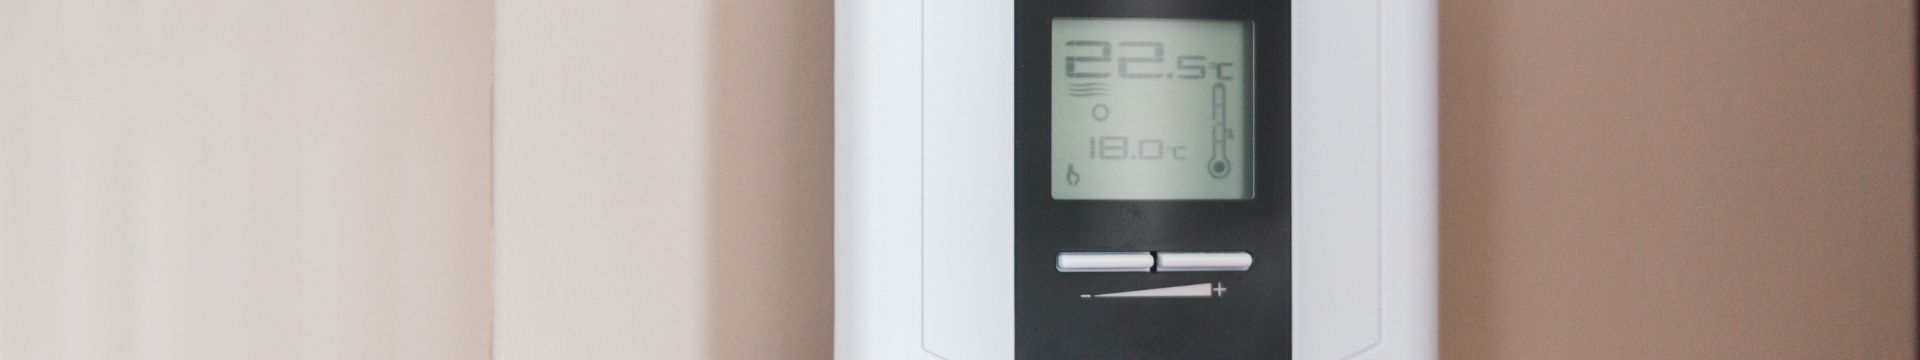 De (hybride) warmtepomp biedt kansen om rendabel je huis duurzaam te verwarmen